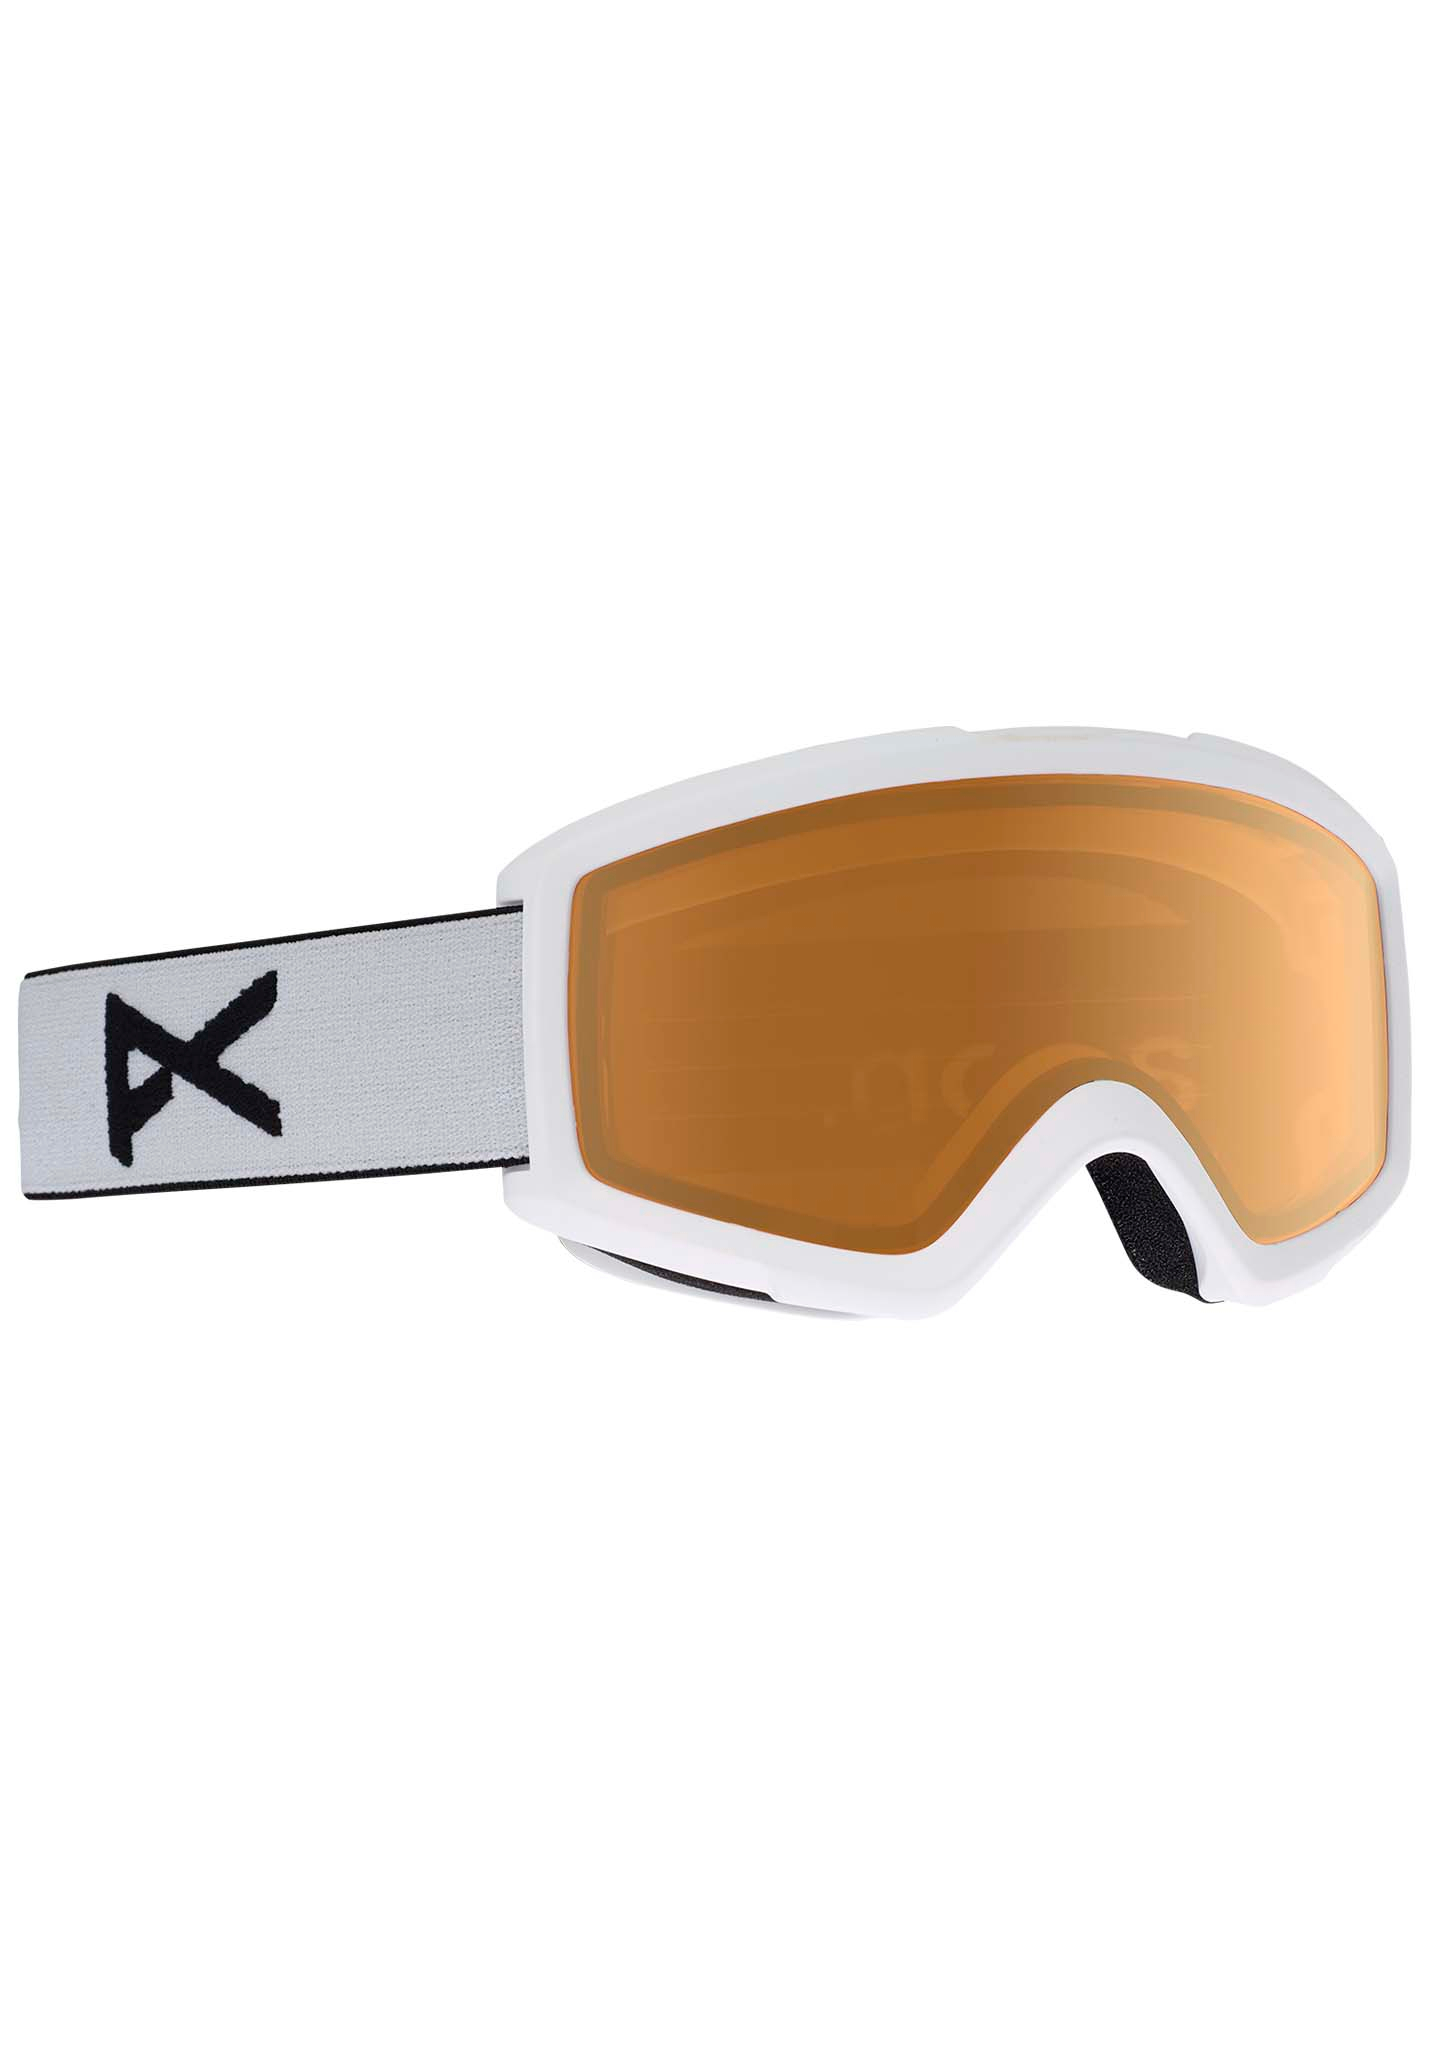 Anon Helix 2.0 Snowboardbrillen weiß/bernsteinfarben One Size